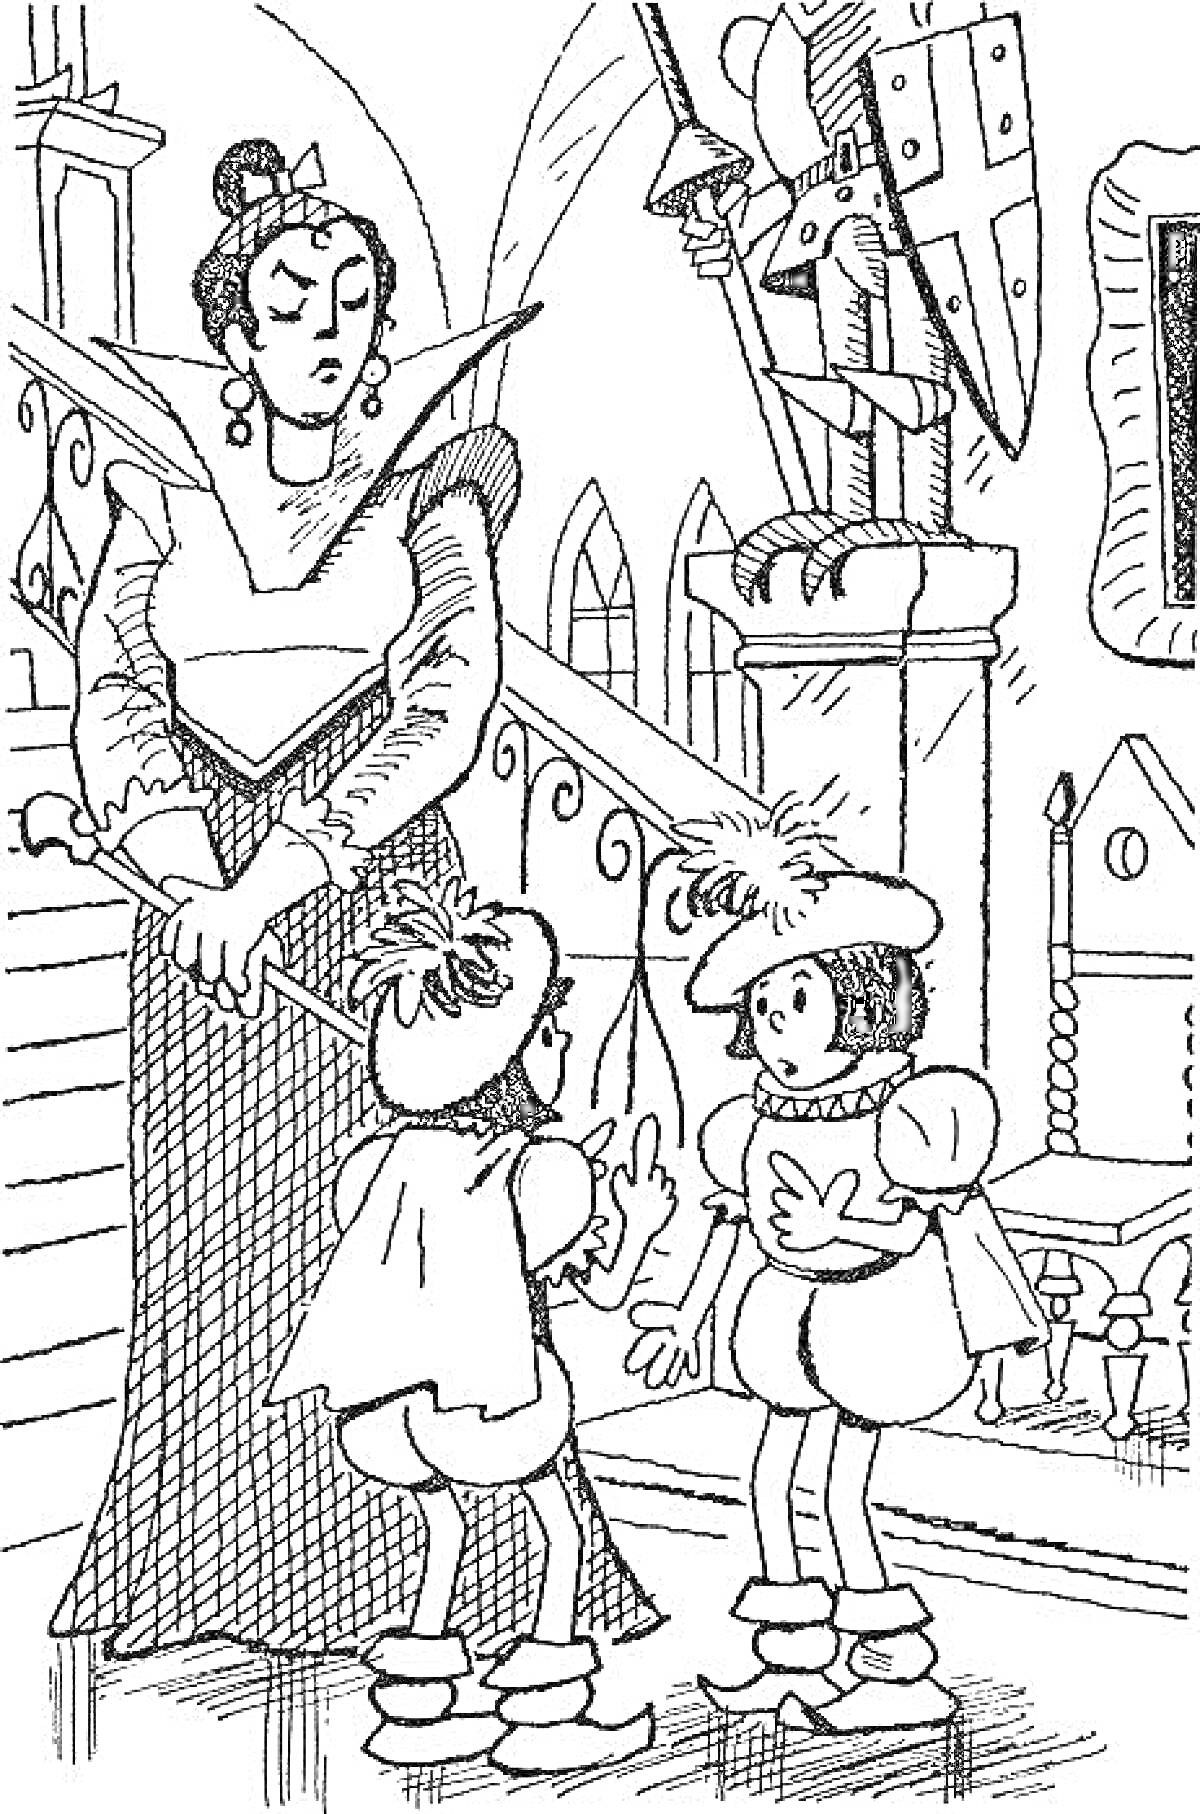 Дама с двумя детьми и рыцарской броней на фоне лестницы и октагонного окна в королевстве кривых зеркал